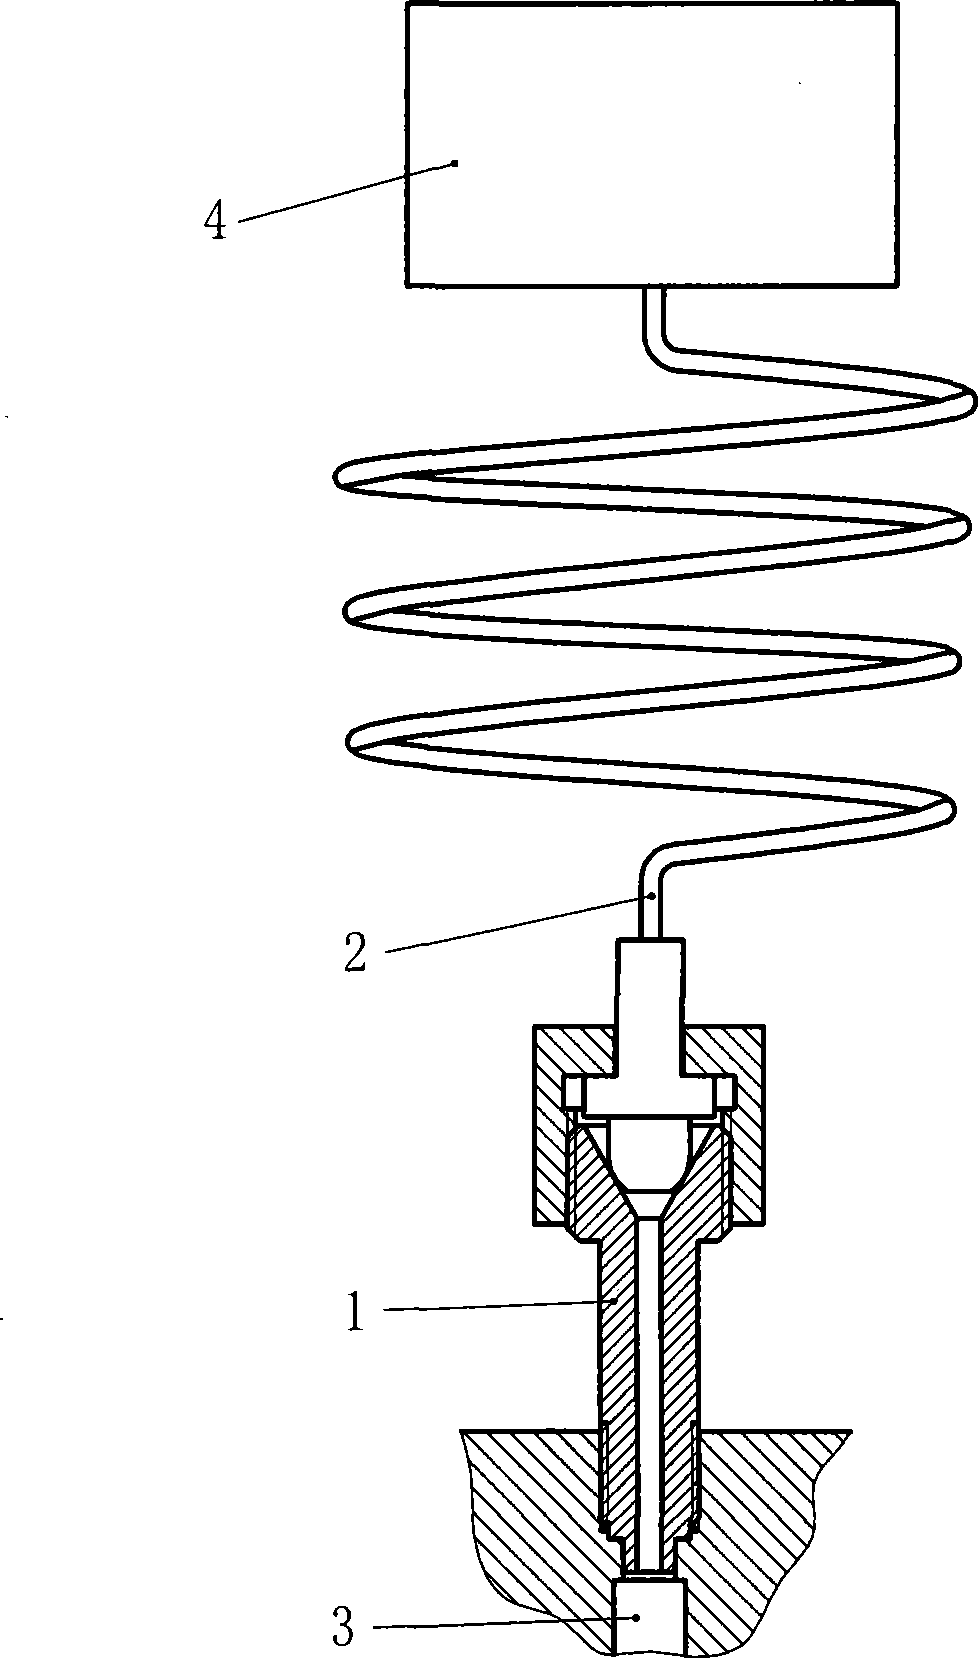 Eyelet phase modulation apparatus of pulse tube refrigerator